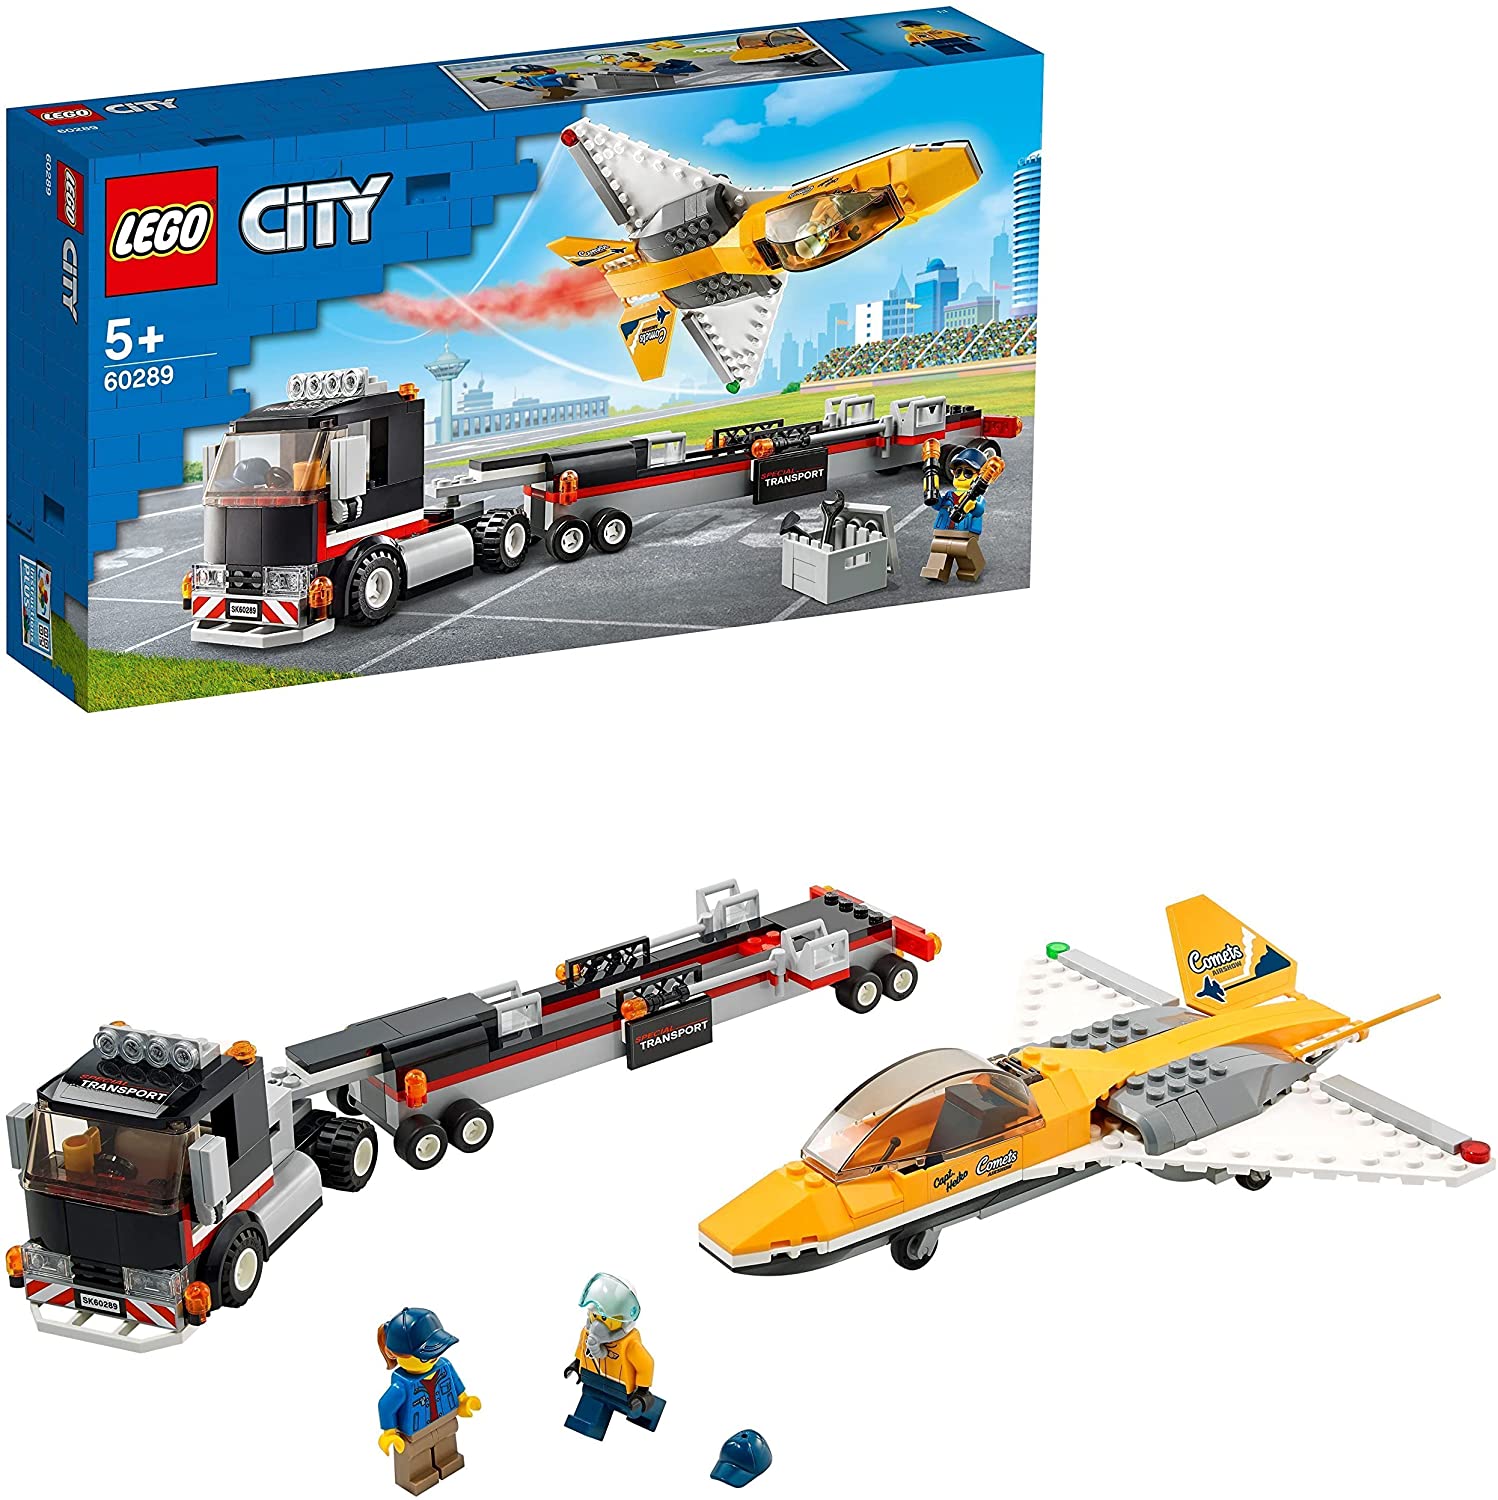 ブロック, セット (LEGO) 60289